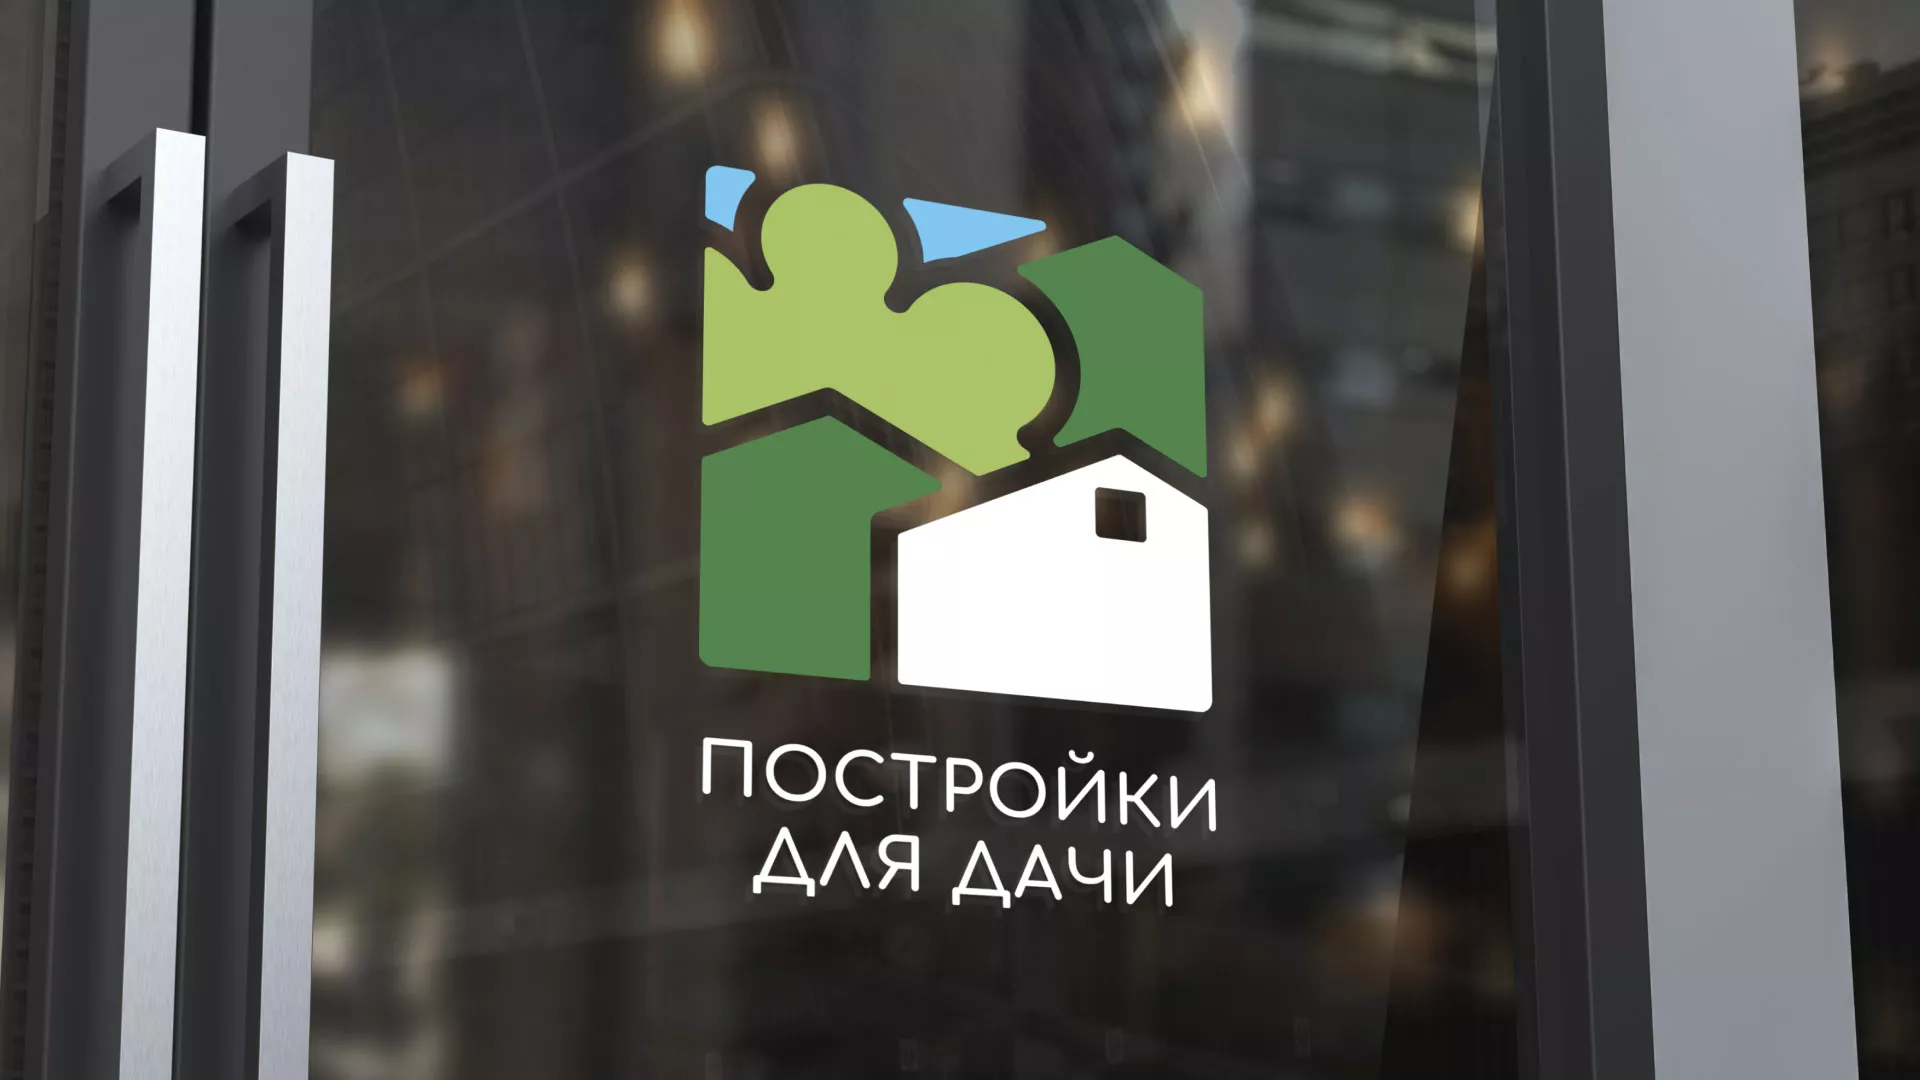 Разработка логотипа в Октябрьске для компании «Постройки для дачи»